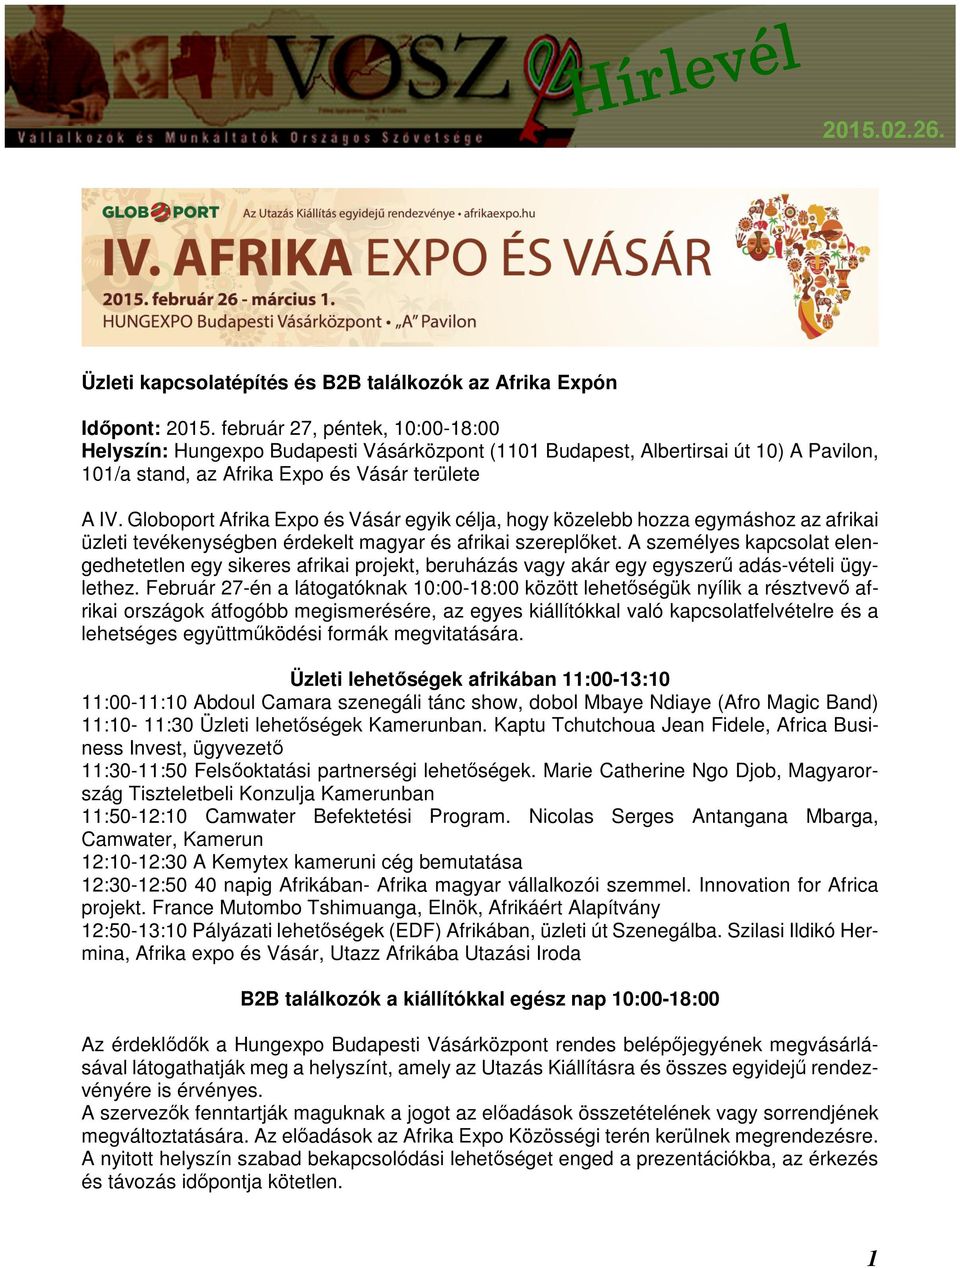 Globoport Afrika Expo és Vásár egyik célja, hogy közelebb hozza egymáshoz az afrikai üzleti tevékenységben érdekelt magyar és afrikai szereplőket.